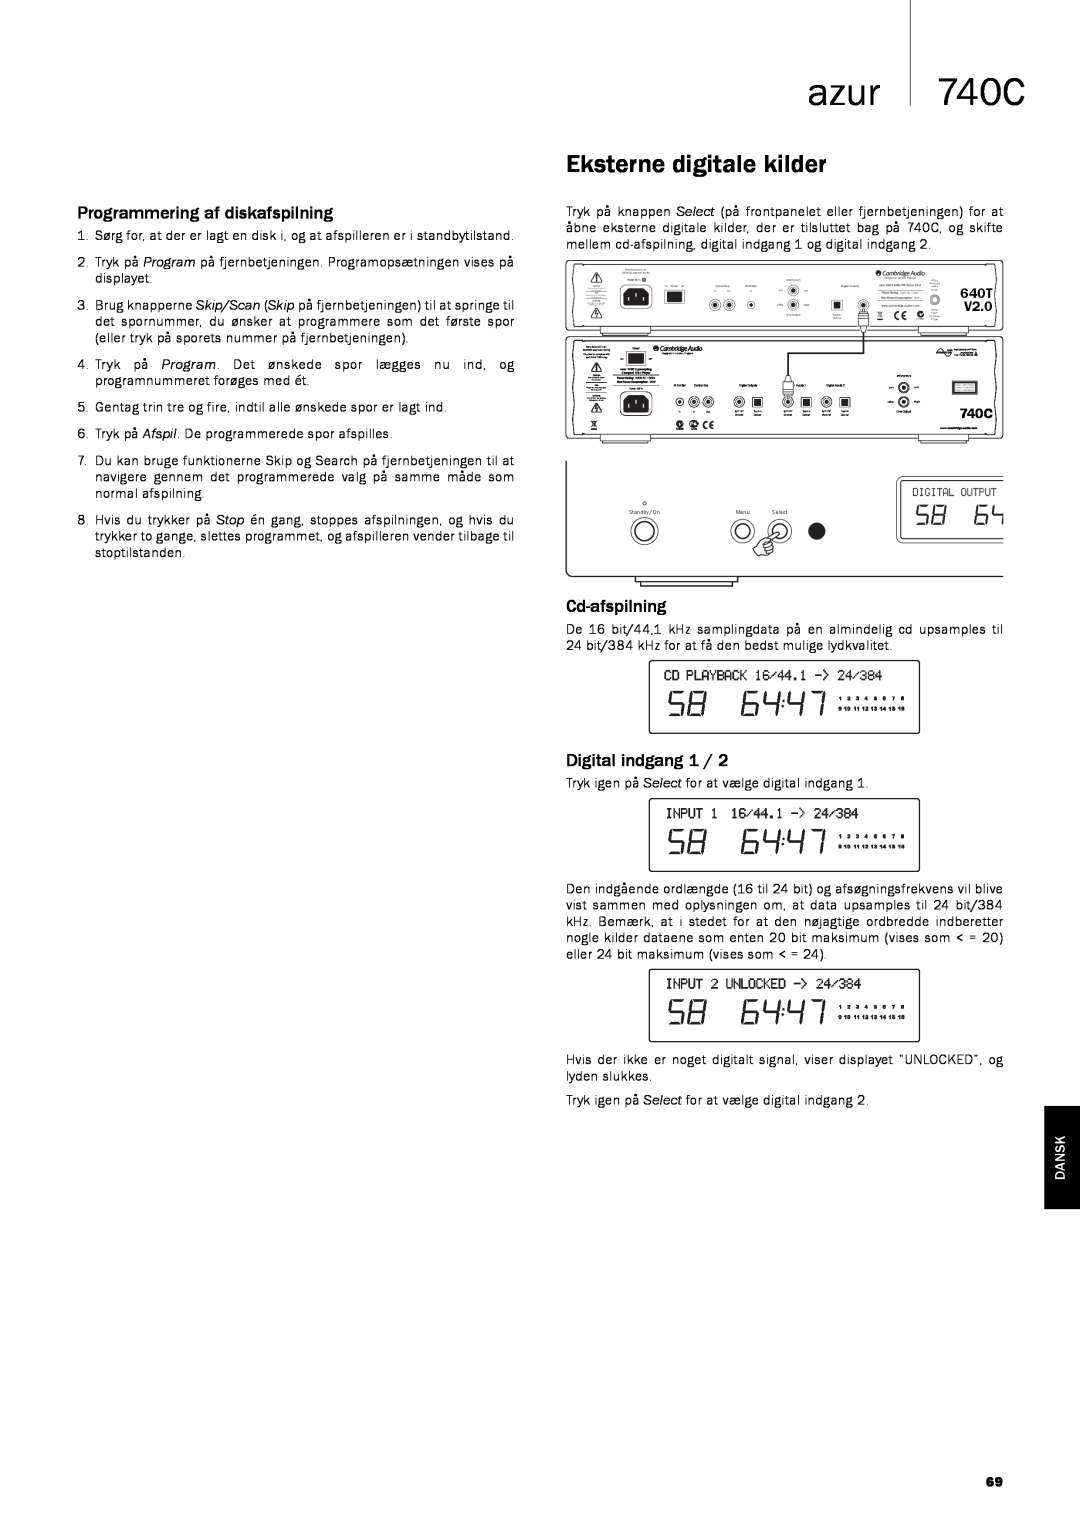 Cambridge Audio Eksterne digitale kilder, azur 740C, Programmering af diskafspilning, Cd-afspilning, Digital indgang 1 